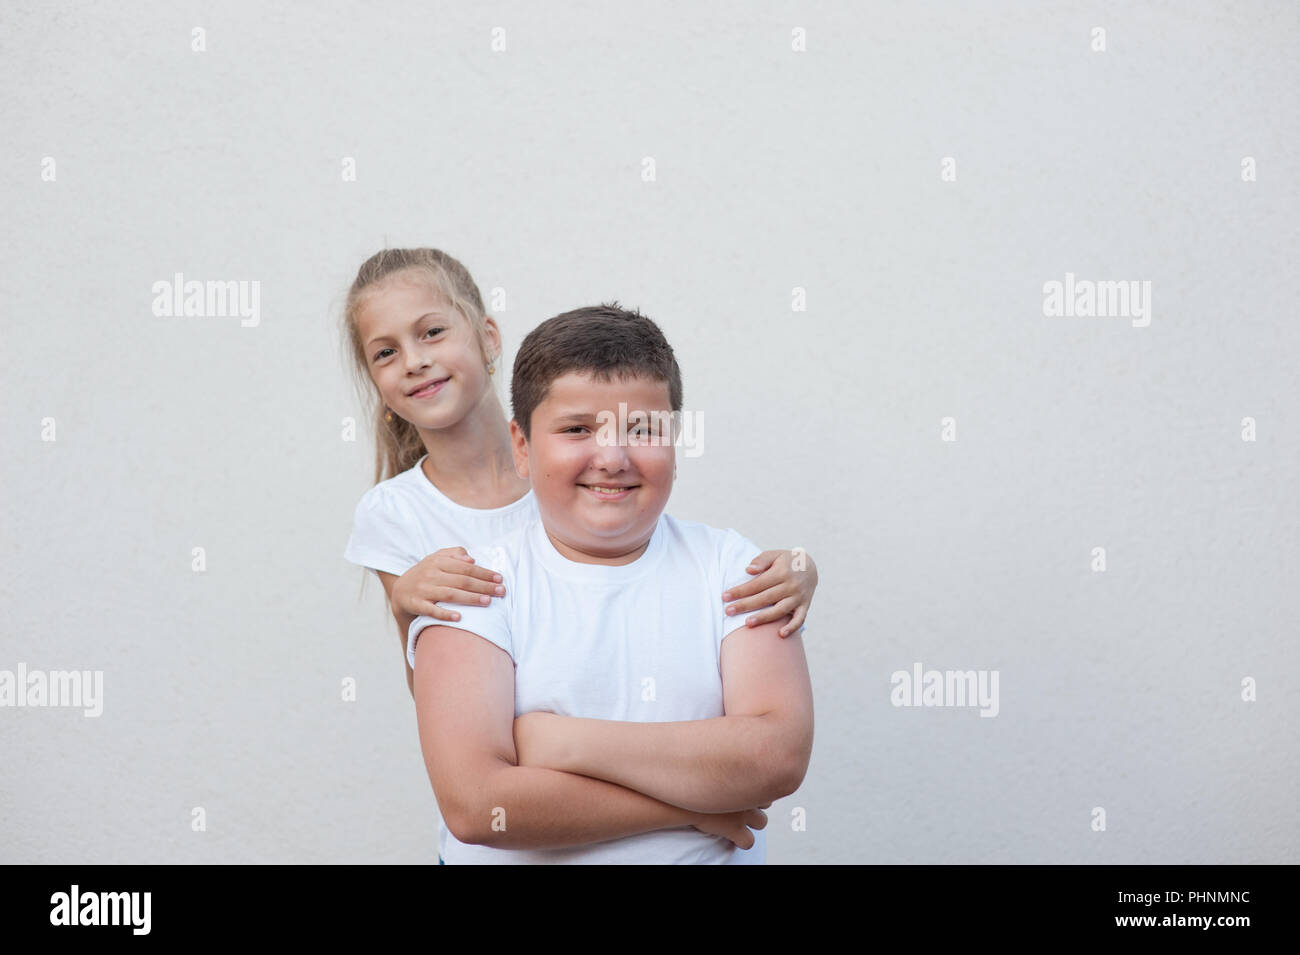 beautiful happy smiling kids thin caucasian girl in white shirt hugging fat boy copyspace Stock Photo